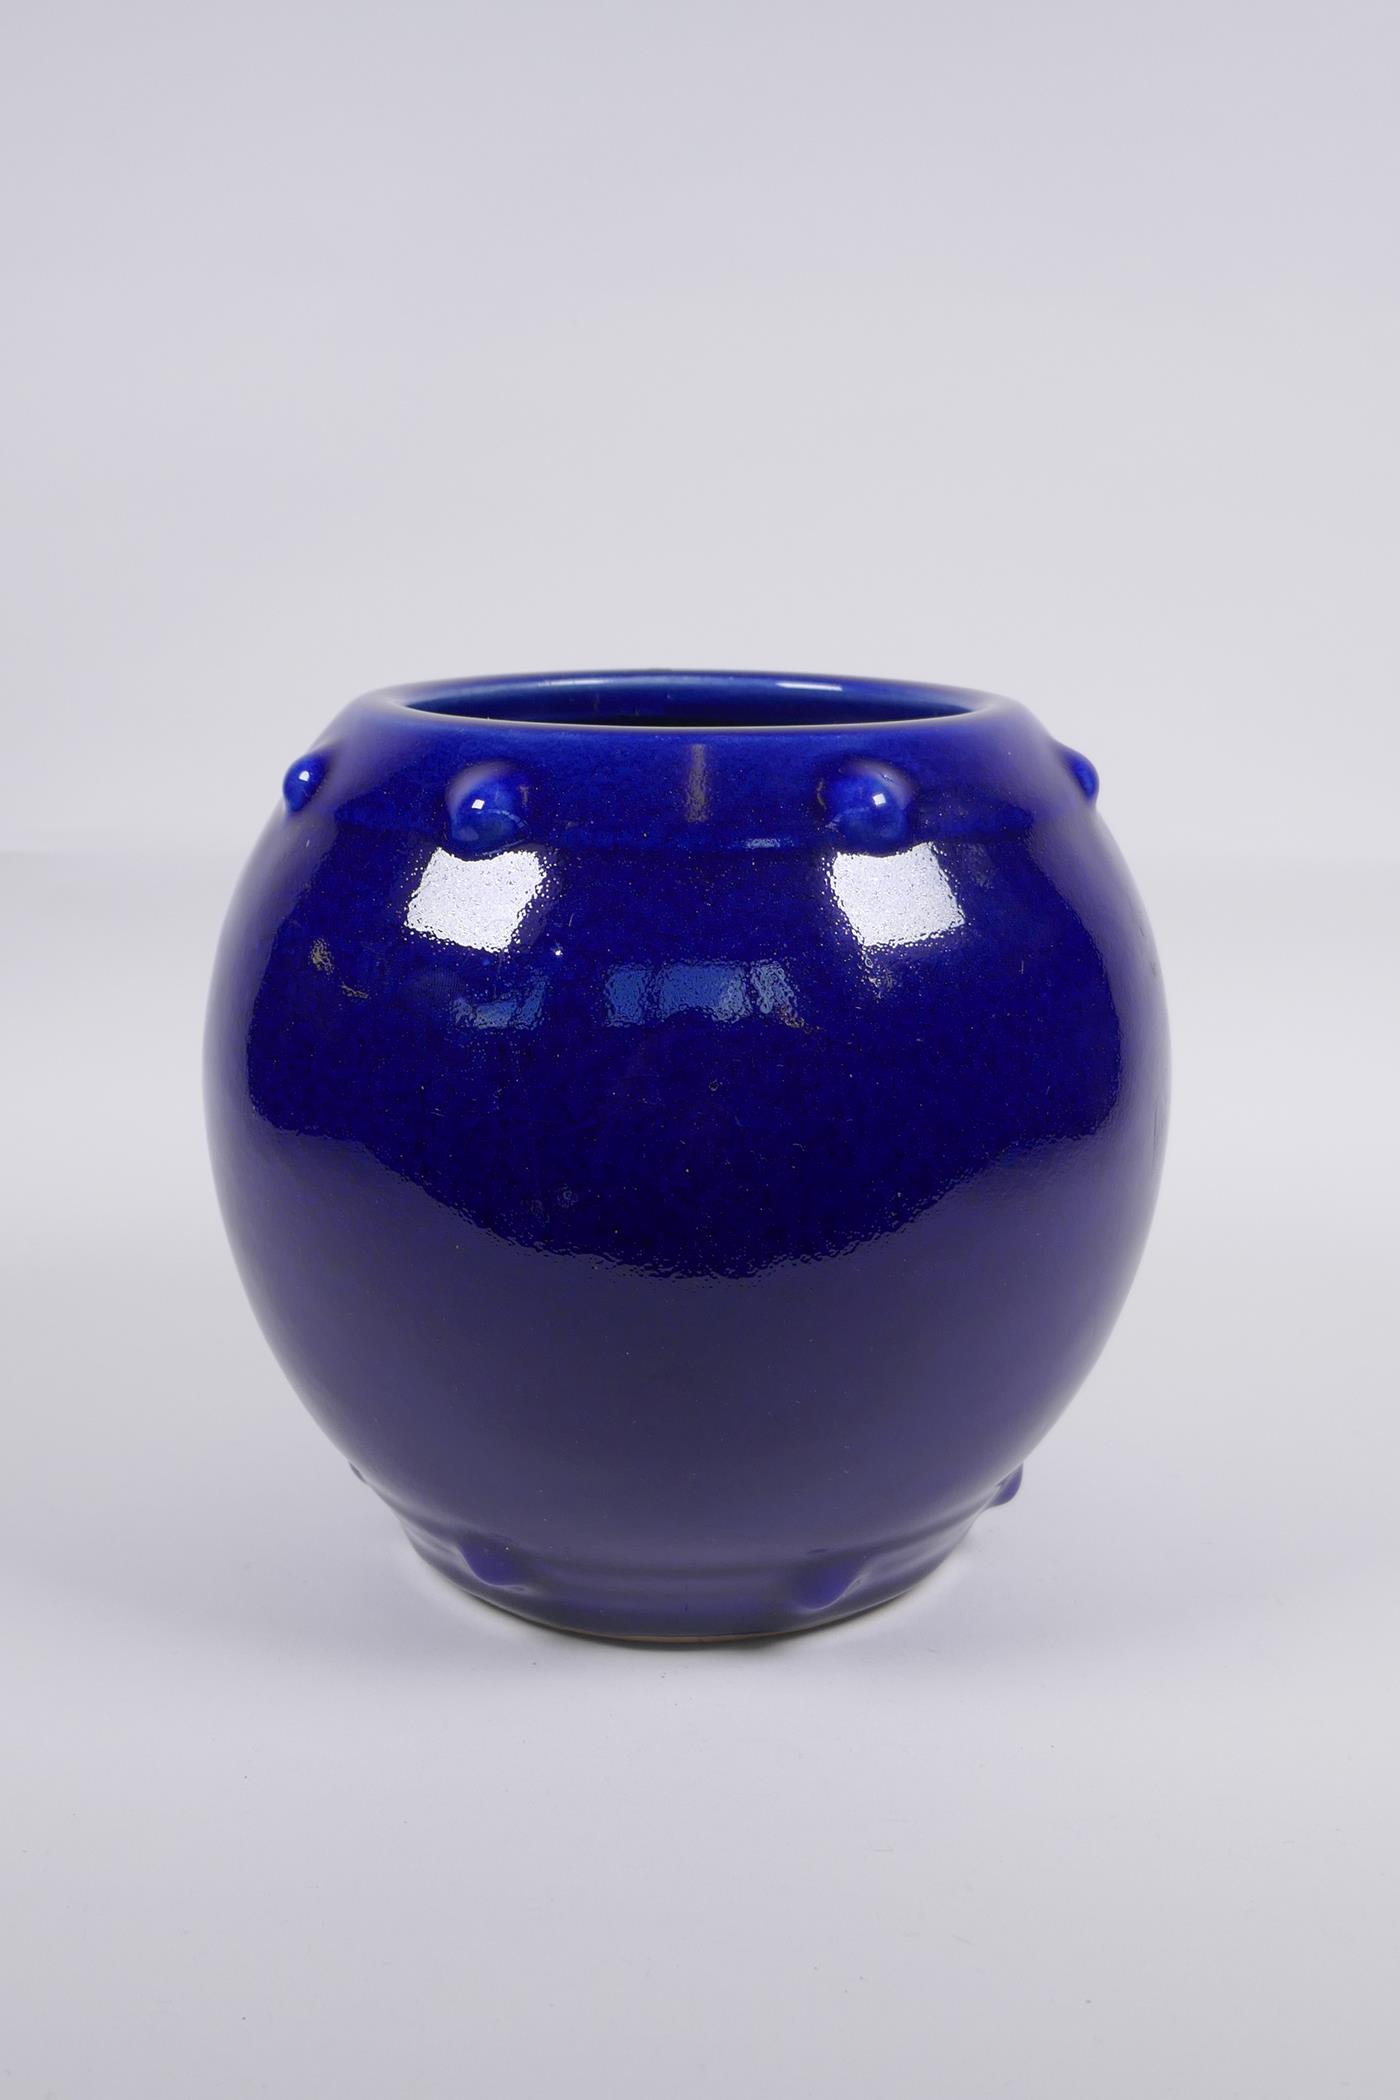 A Chinese blue glazed porcelain barrel shaped vase, KangXi 6 character mark to base, 19cm high, 22cm - Image 3 of 5